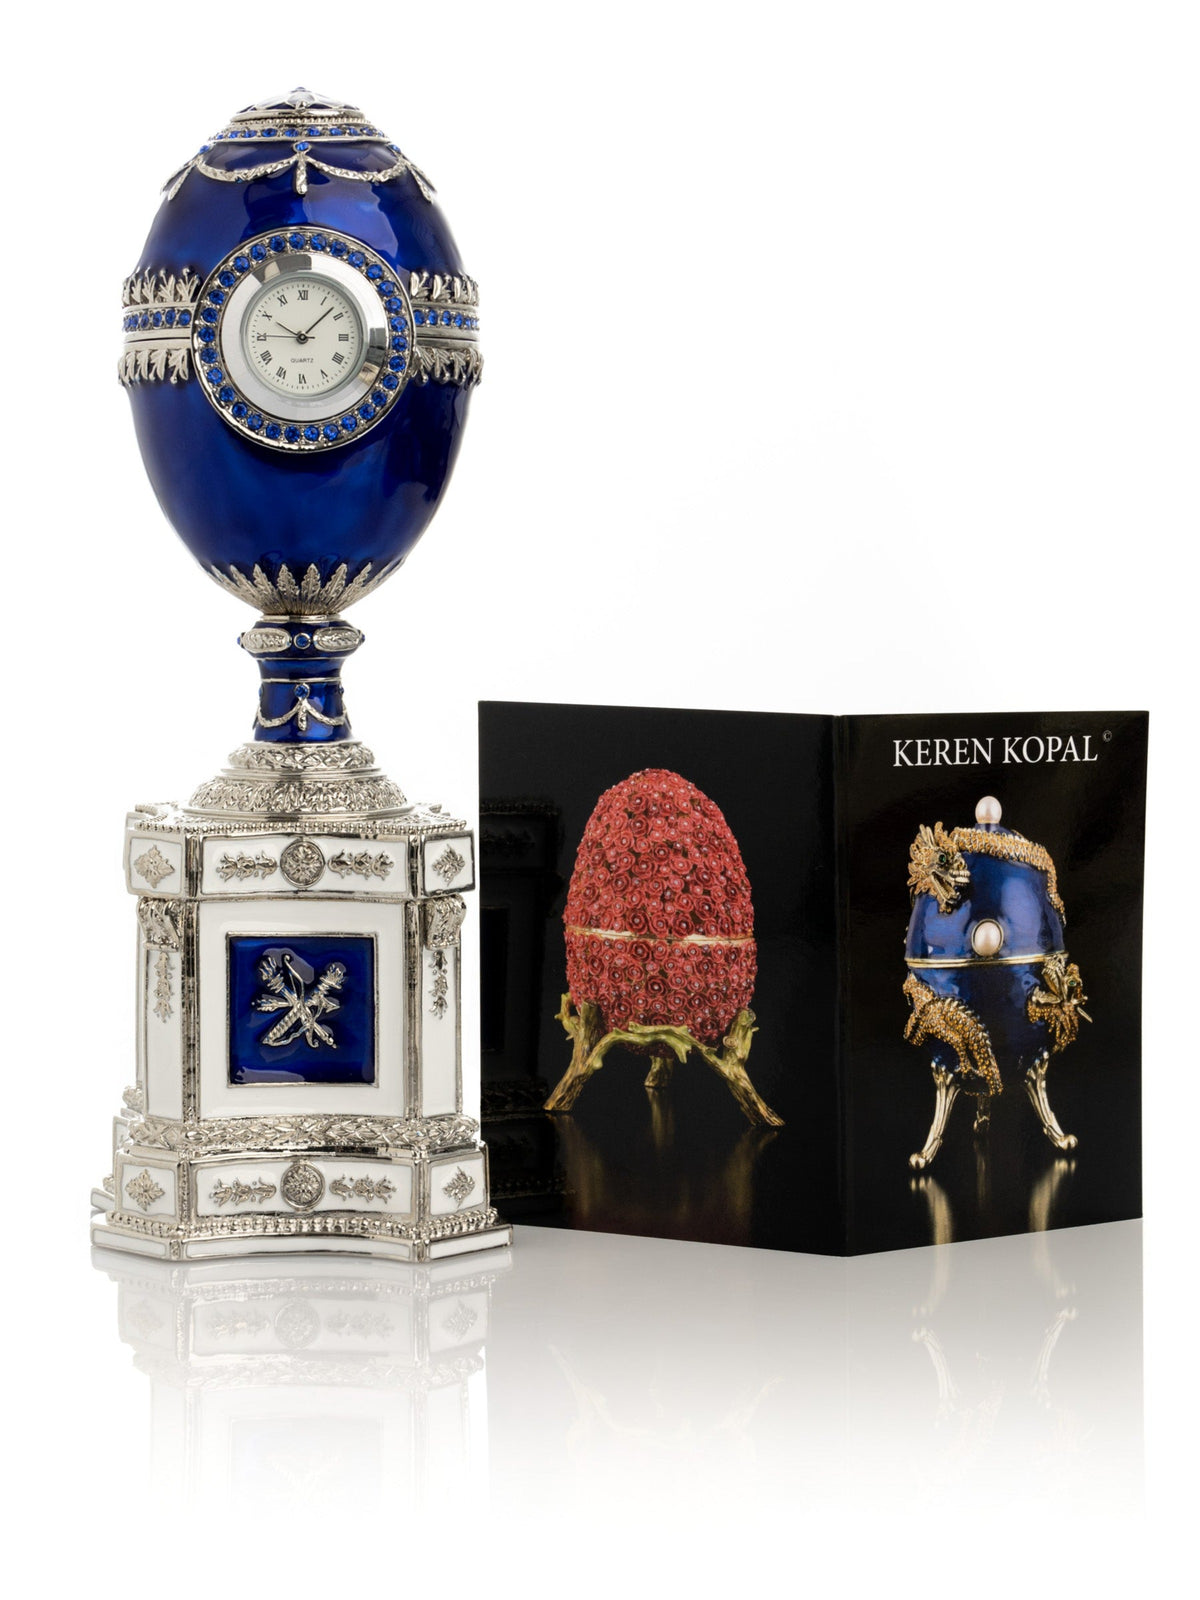 Blaues Fabergé-Ei mit einer Perle und einer Uhr